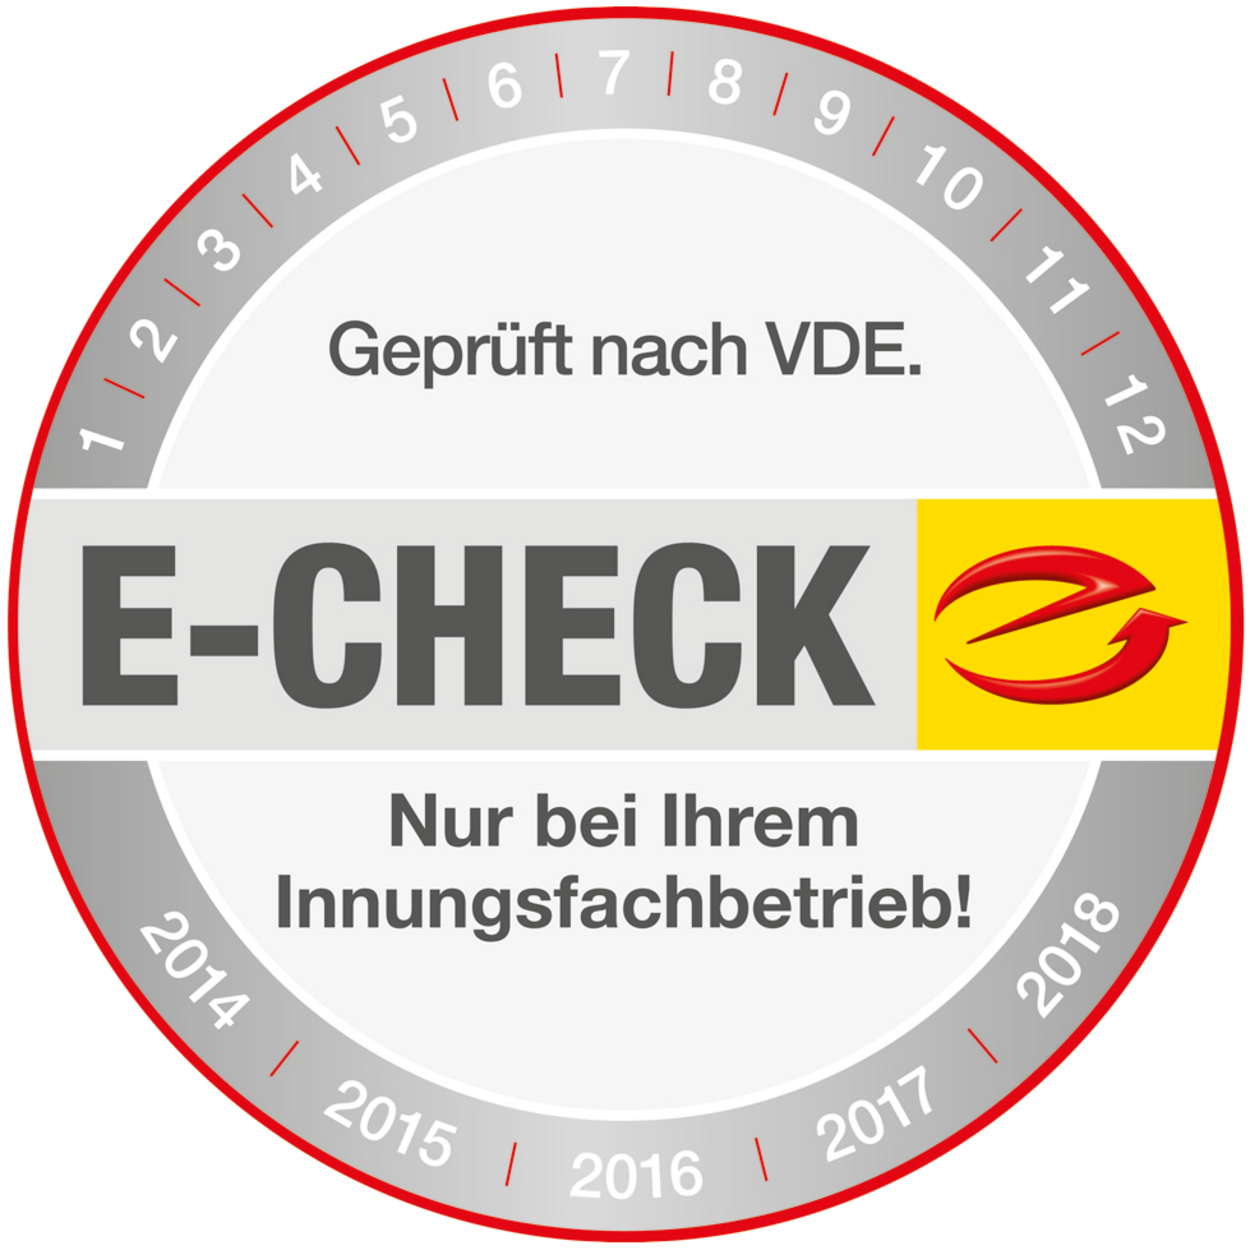 Der E-Check bei Fuchs GmbH in Großmehring